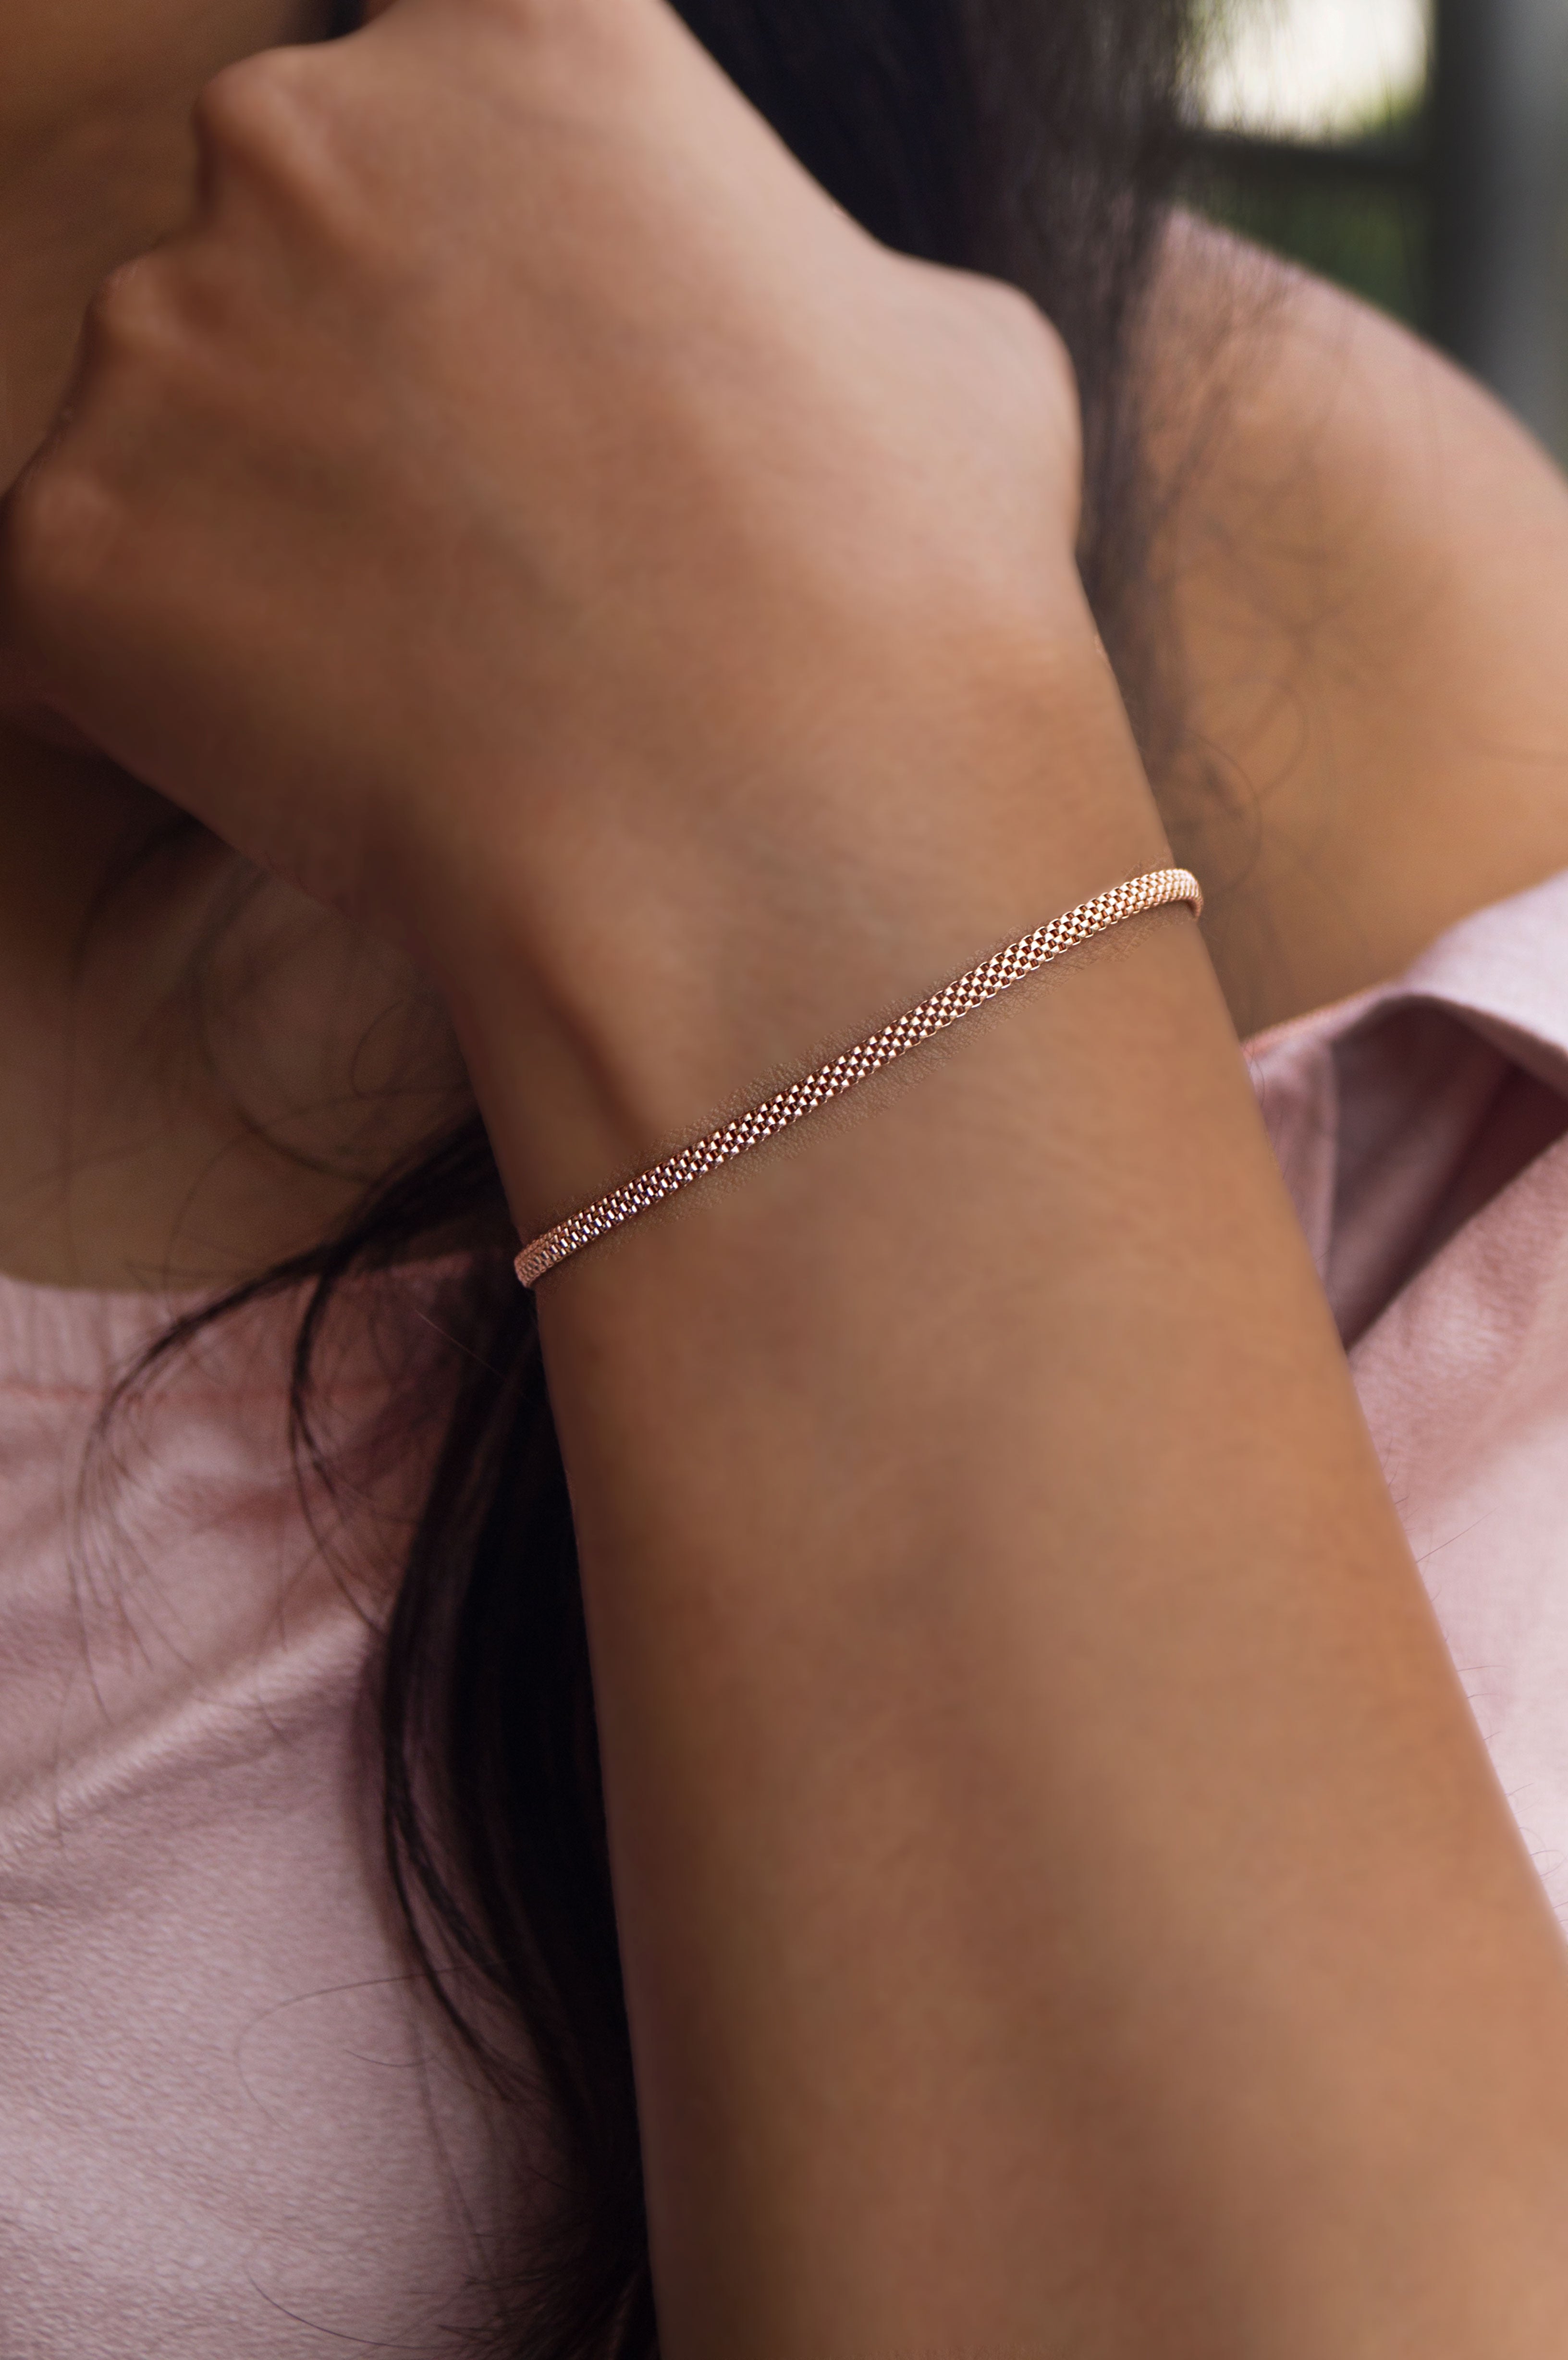 Buy Dainty Heart Chain BraceletSimple Delicate Stacking Heart Chain  Bracelets for Women at Amazonin